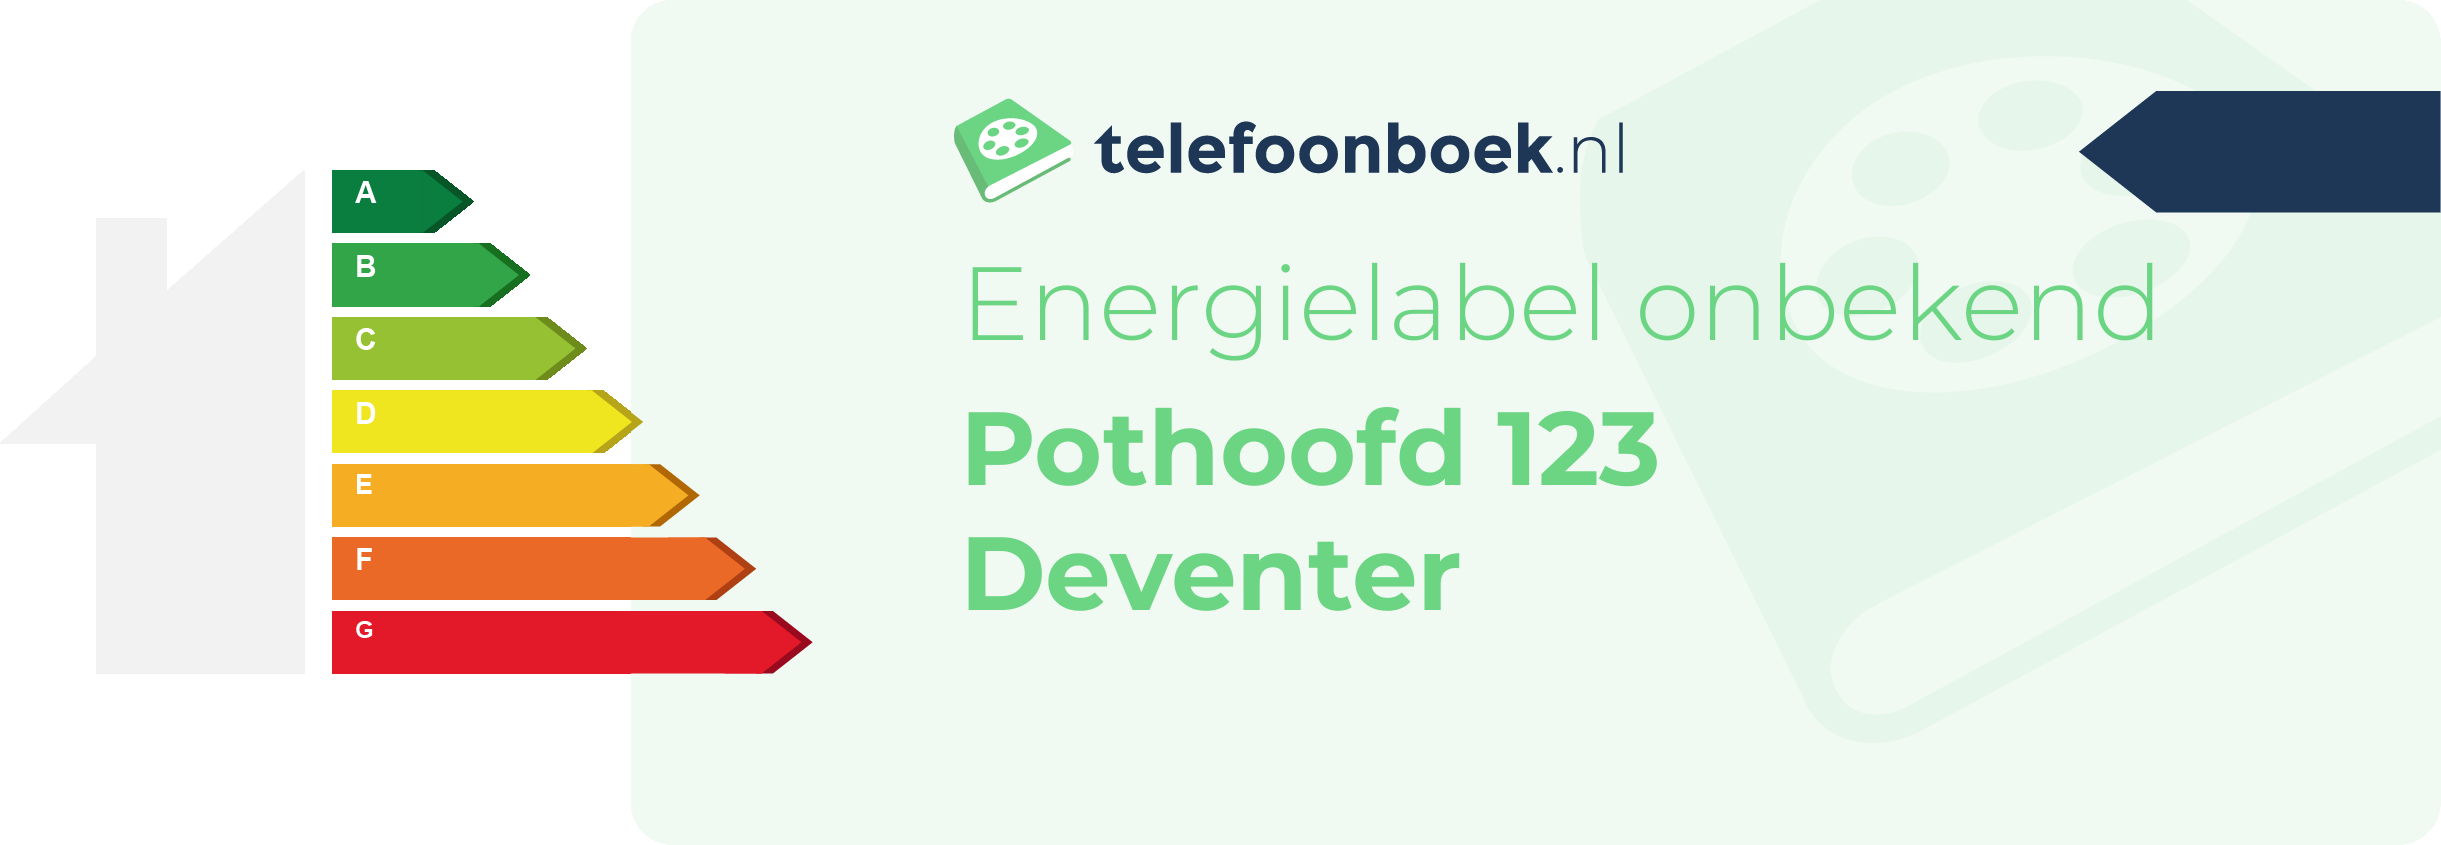 Energielabel Pothoofd 123 Deventer